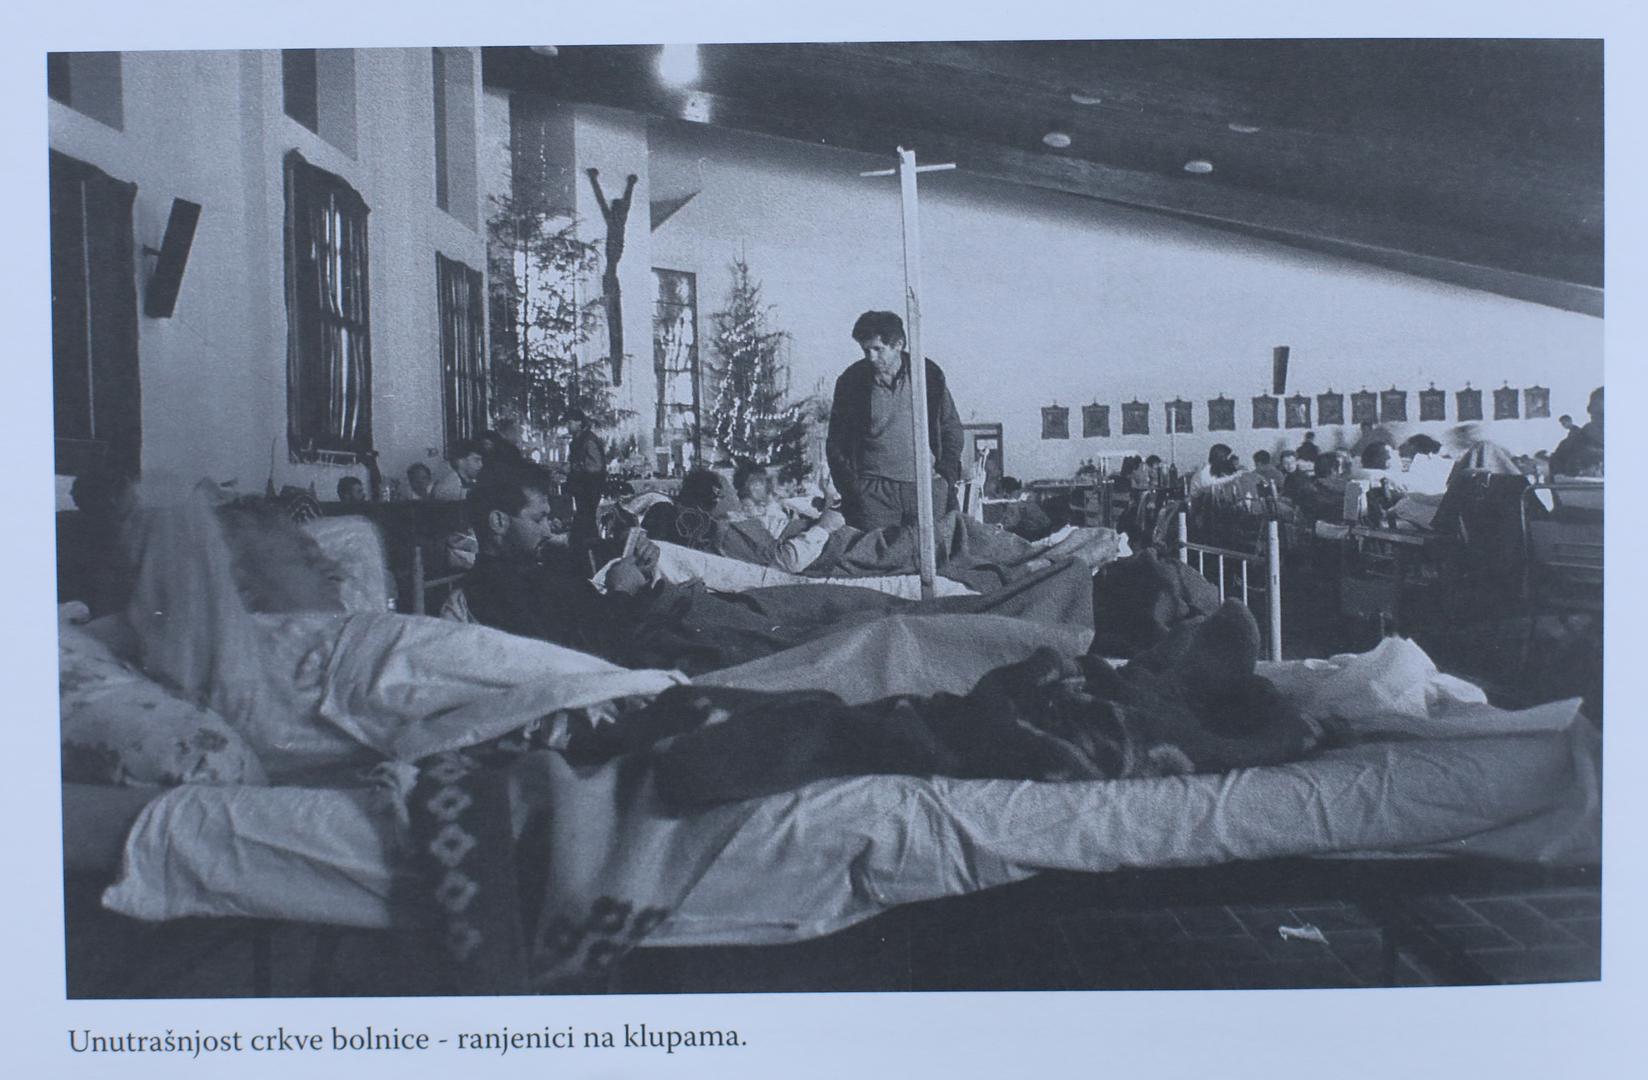 Nehumani uvjeti - U franjevačkoj crkvi pretvorenoj u bolnicu ranjenici su ležali po drvenim klupama
